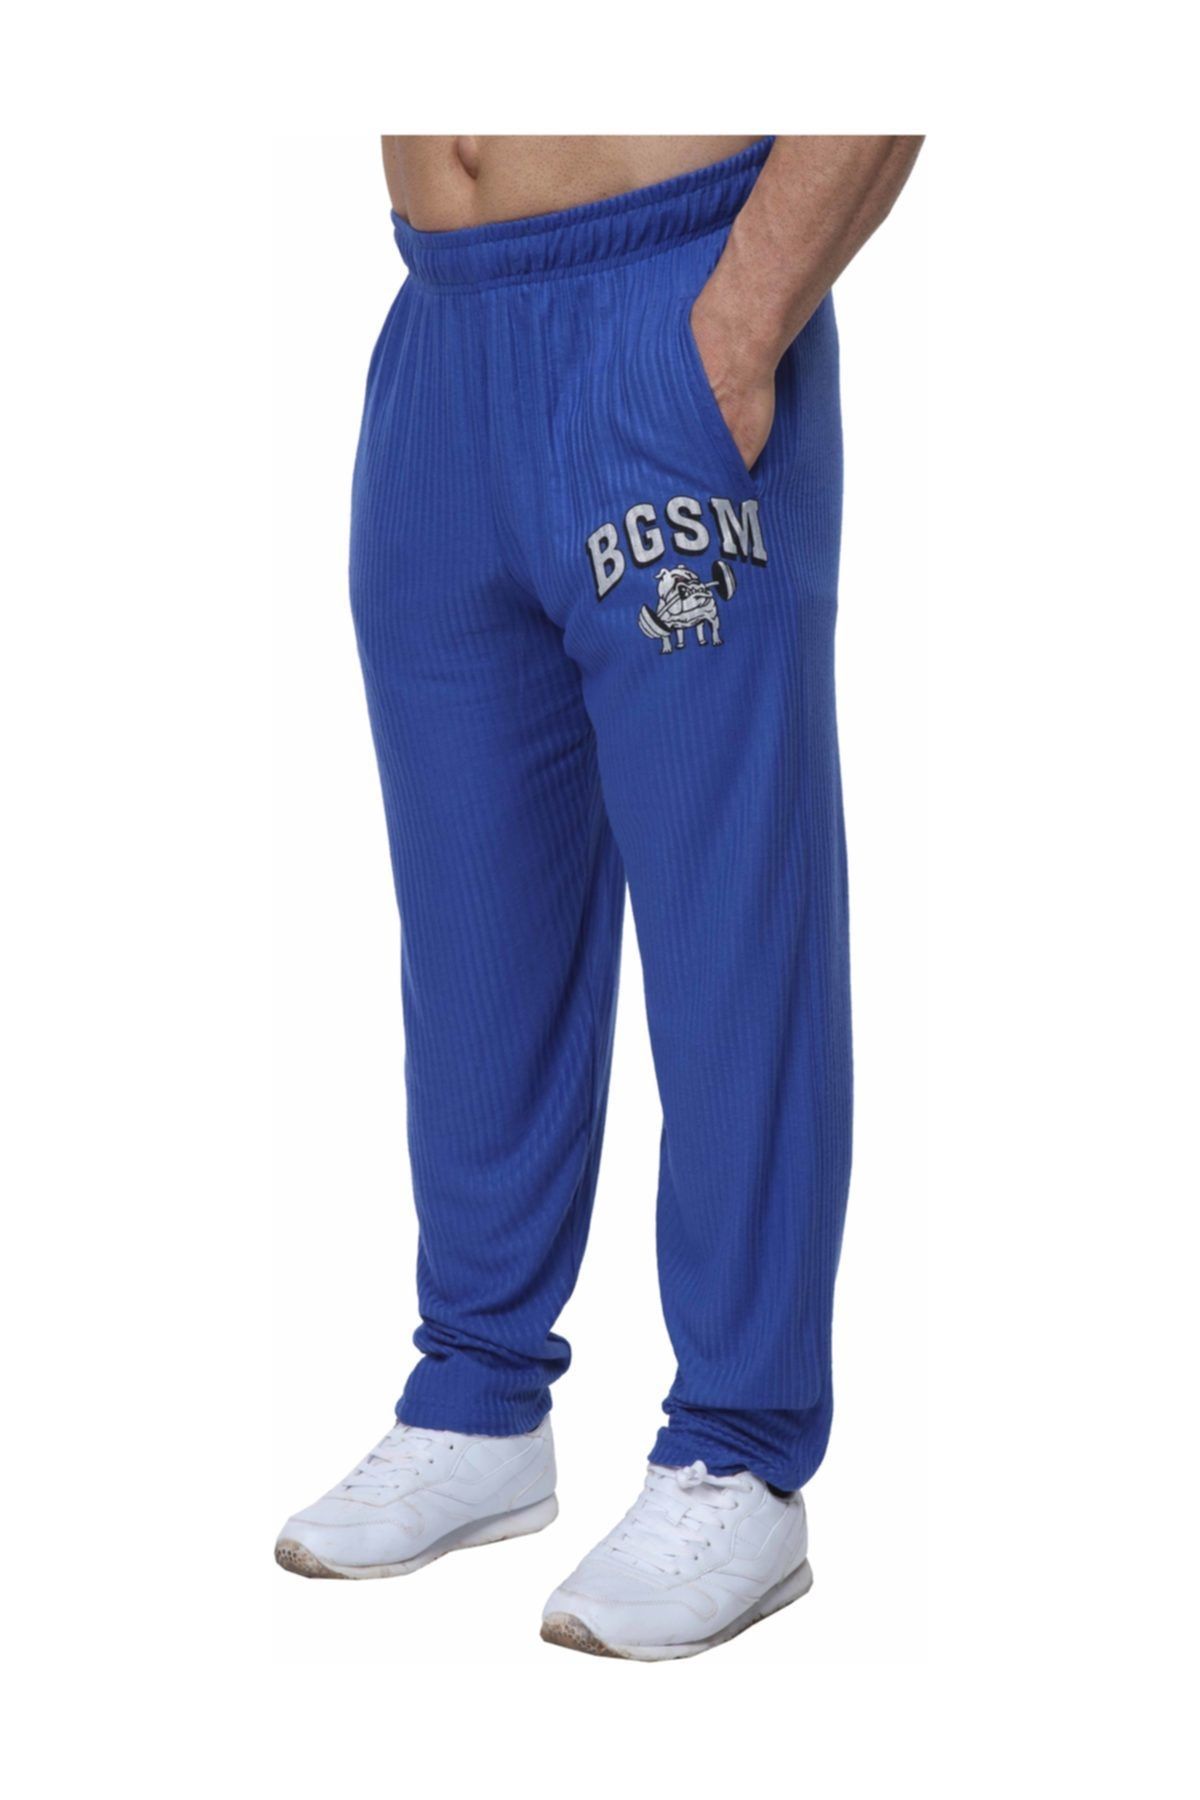 Big Sam Big Sam Fitness Gym Pantolon Eşofman Altı Mavi 1204